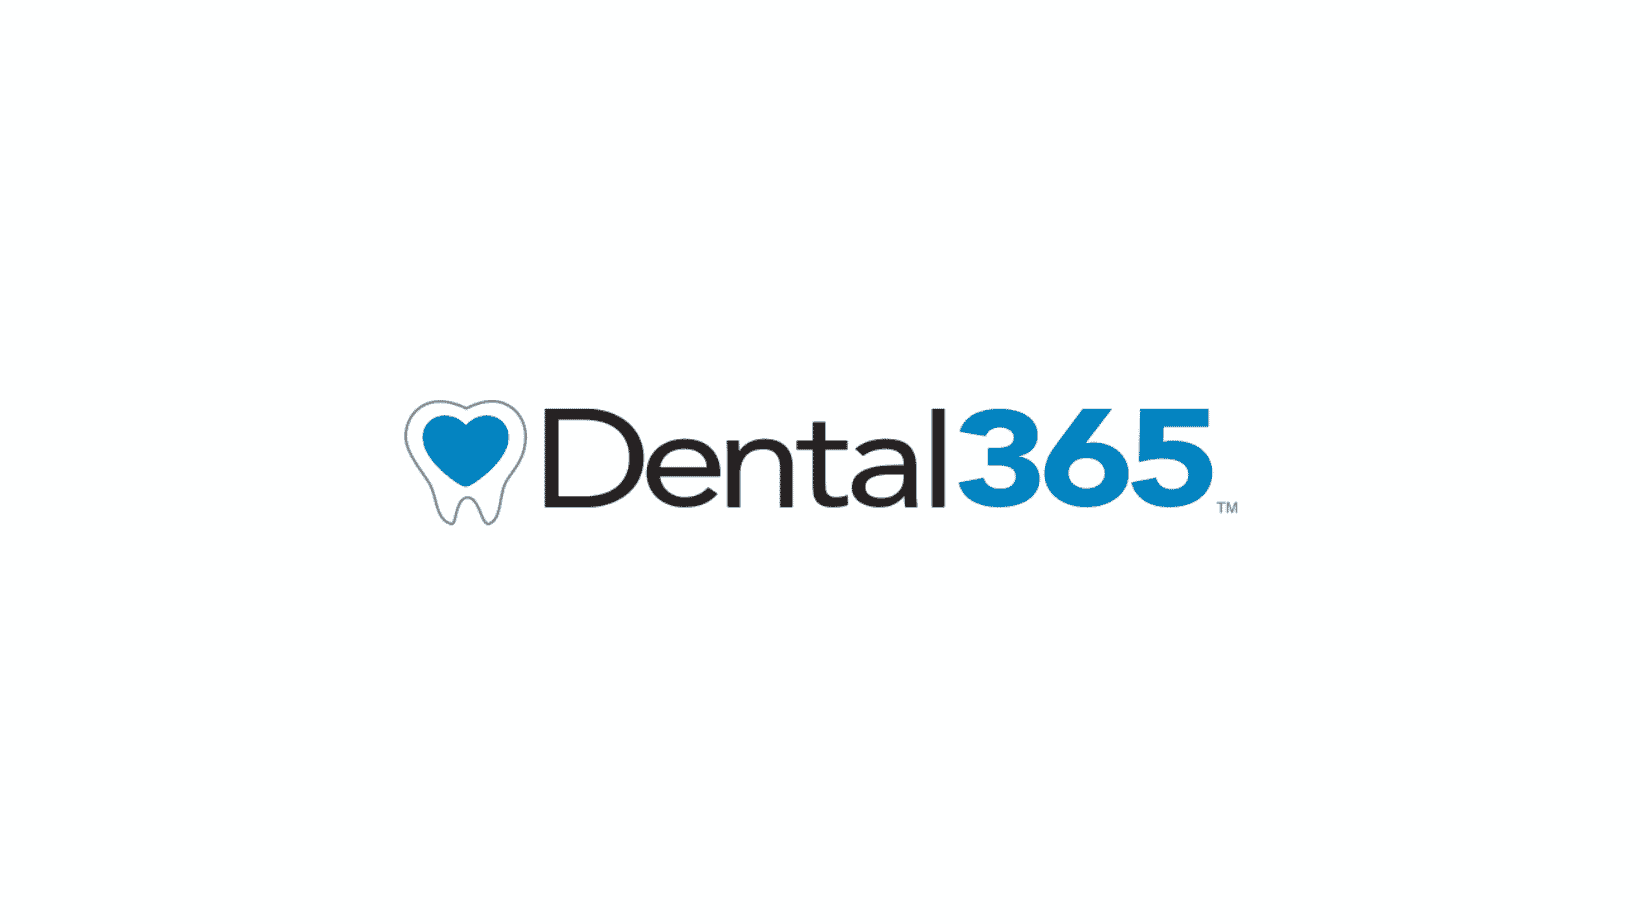 Dental365 Announces New President and CFO